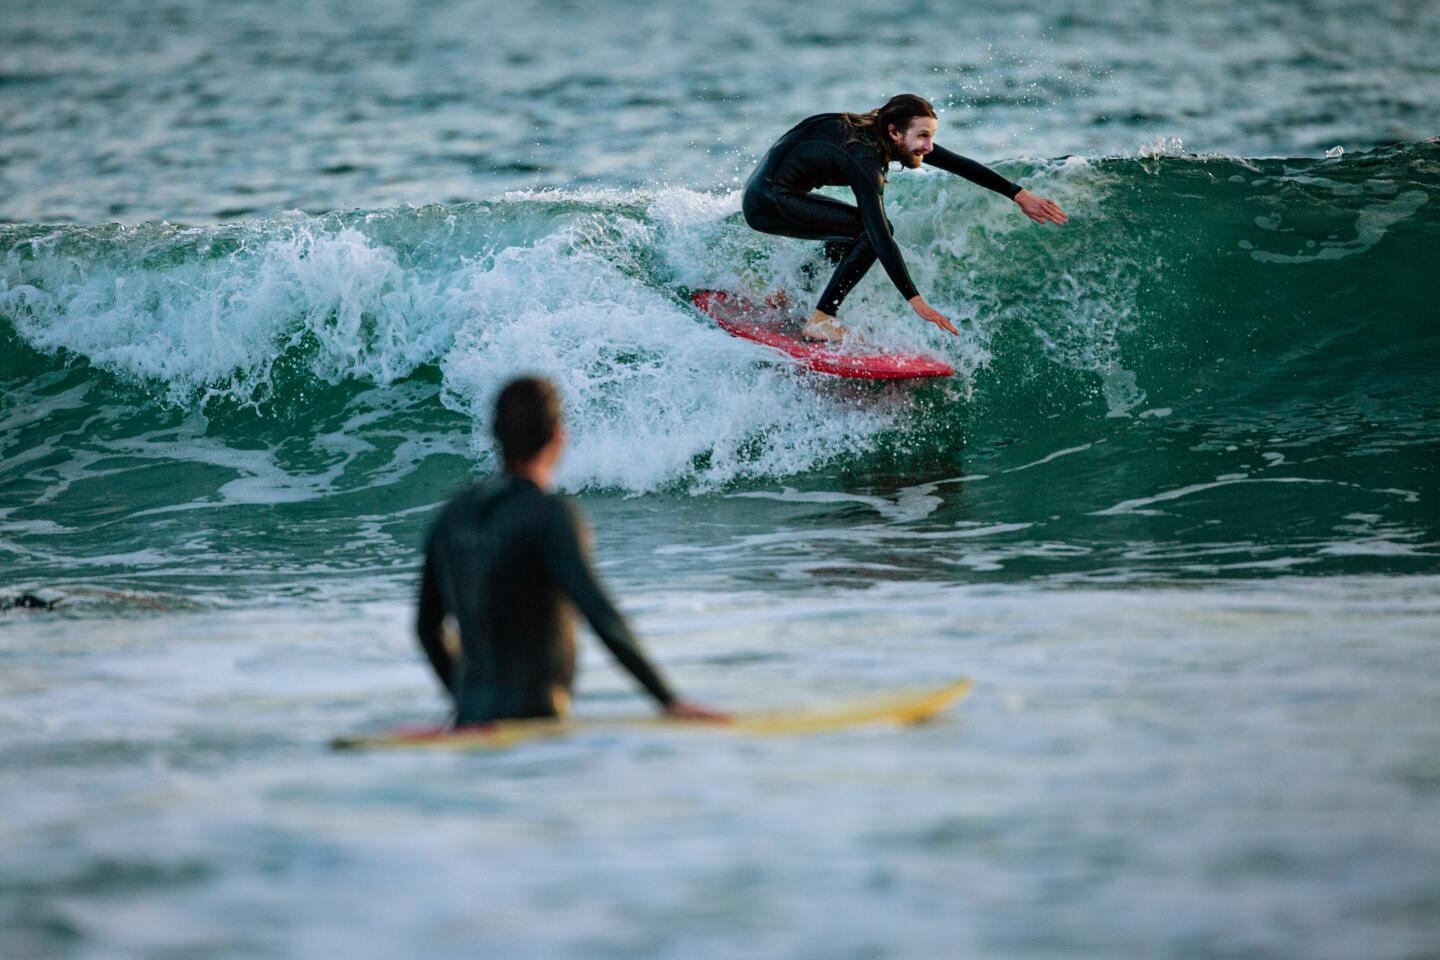 Surfers keep active at Venice beach on Thursday.